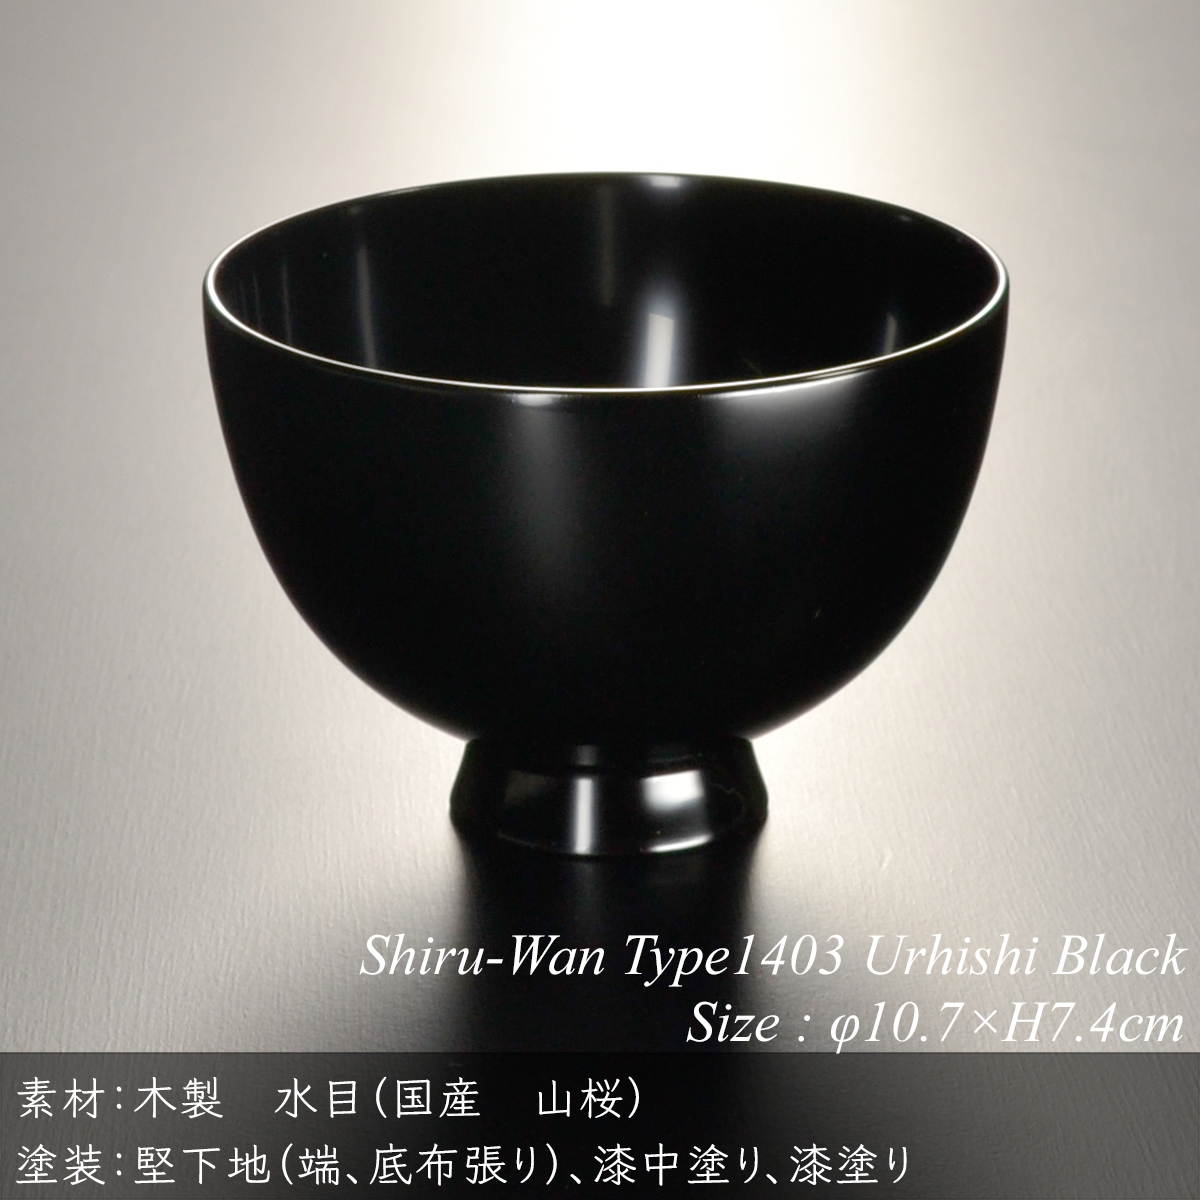 木製 汁椀 type1403 黒 漆塗り モダン 漆器 日本製 国産 食器洗浄機